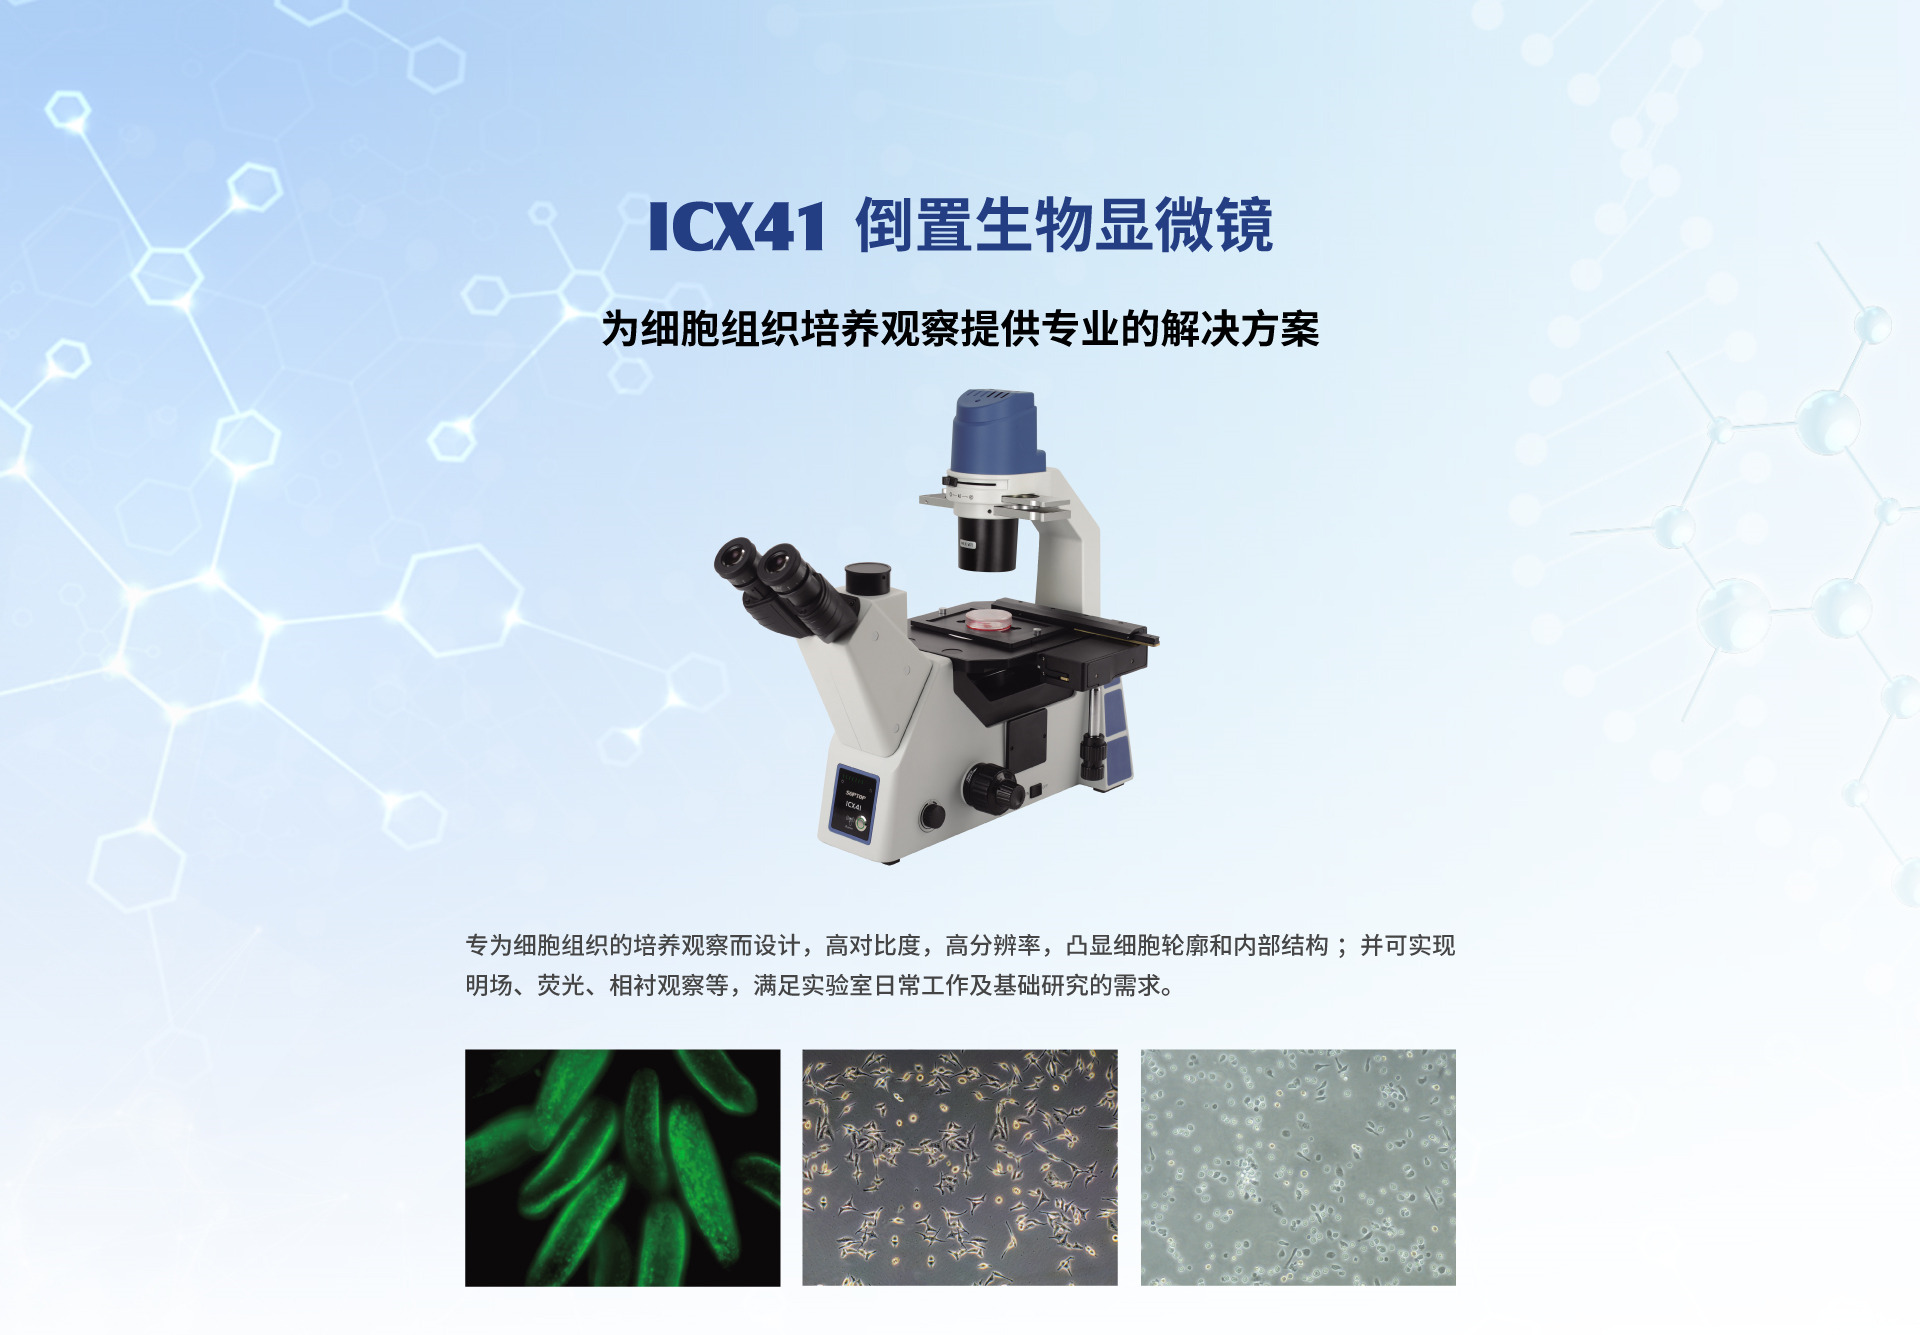 ICX41系列倒置生物显微镜